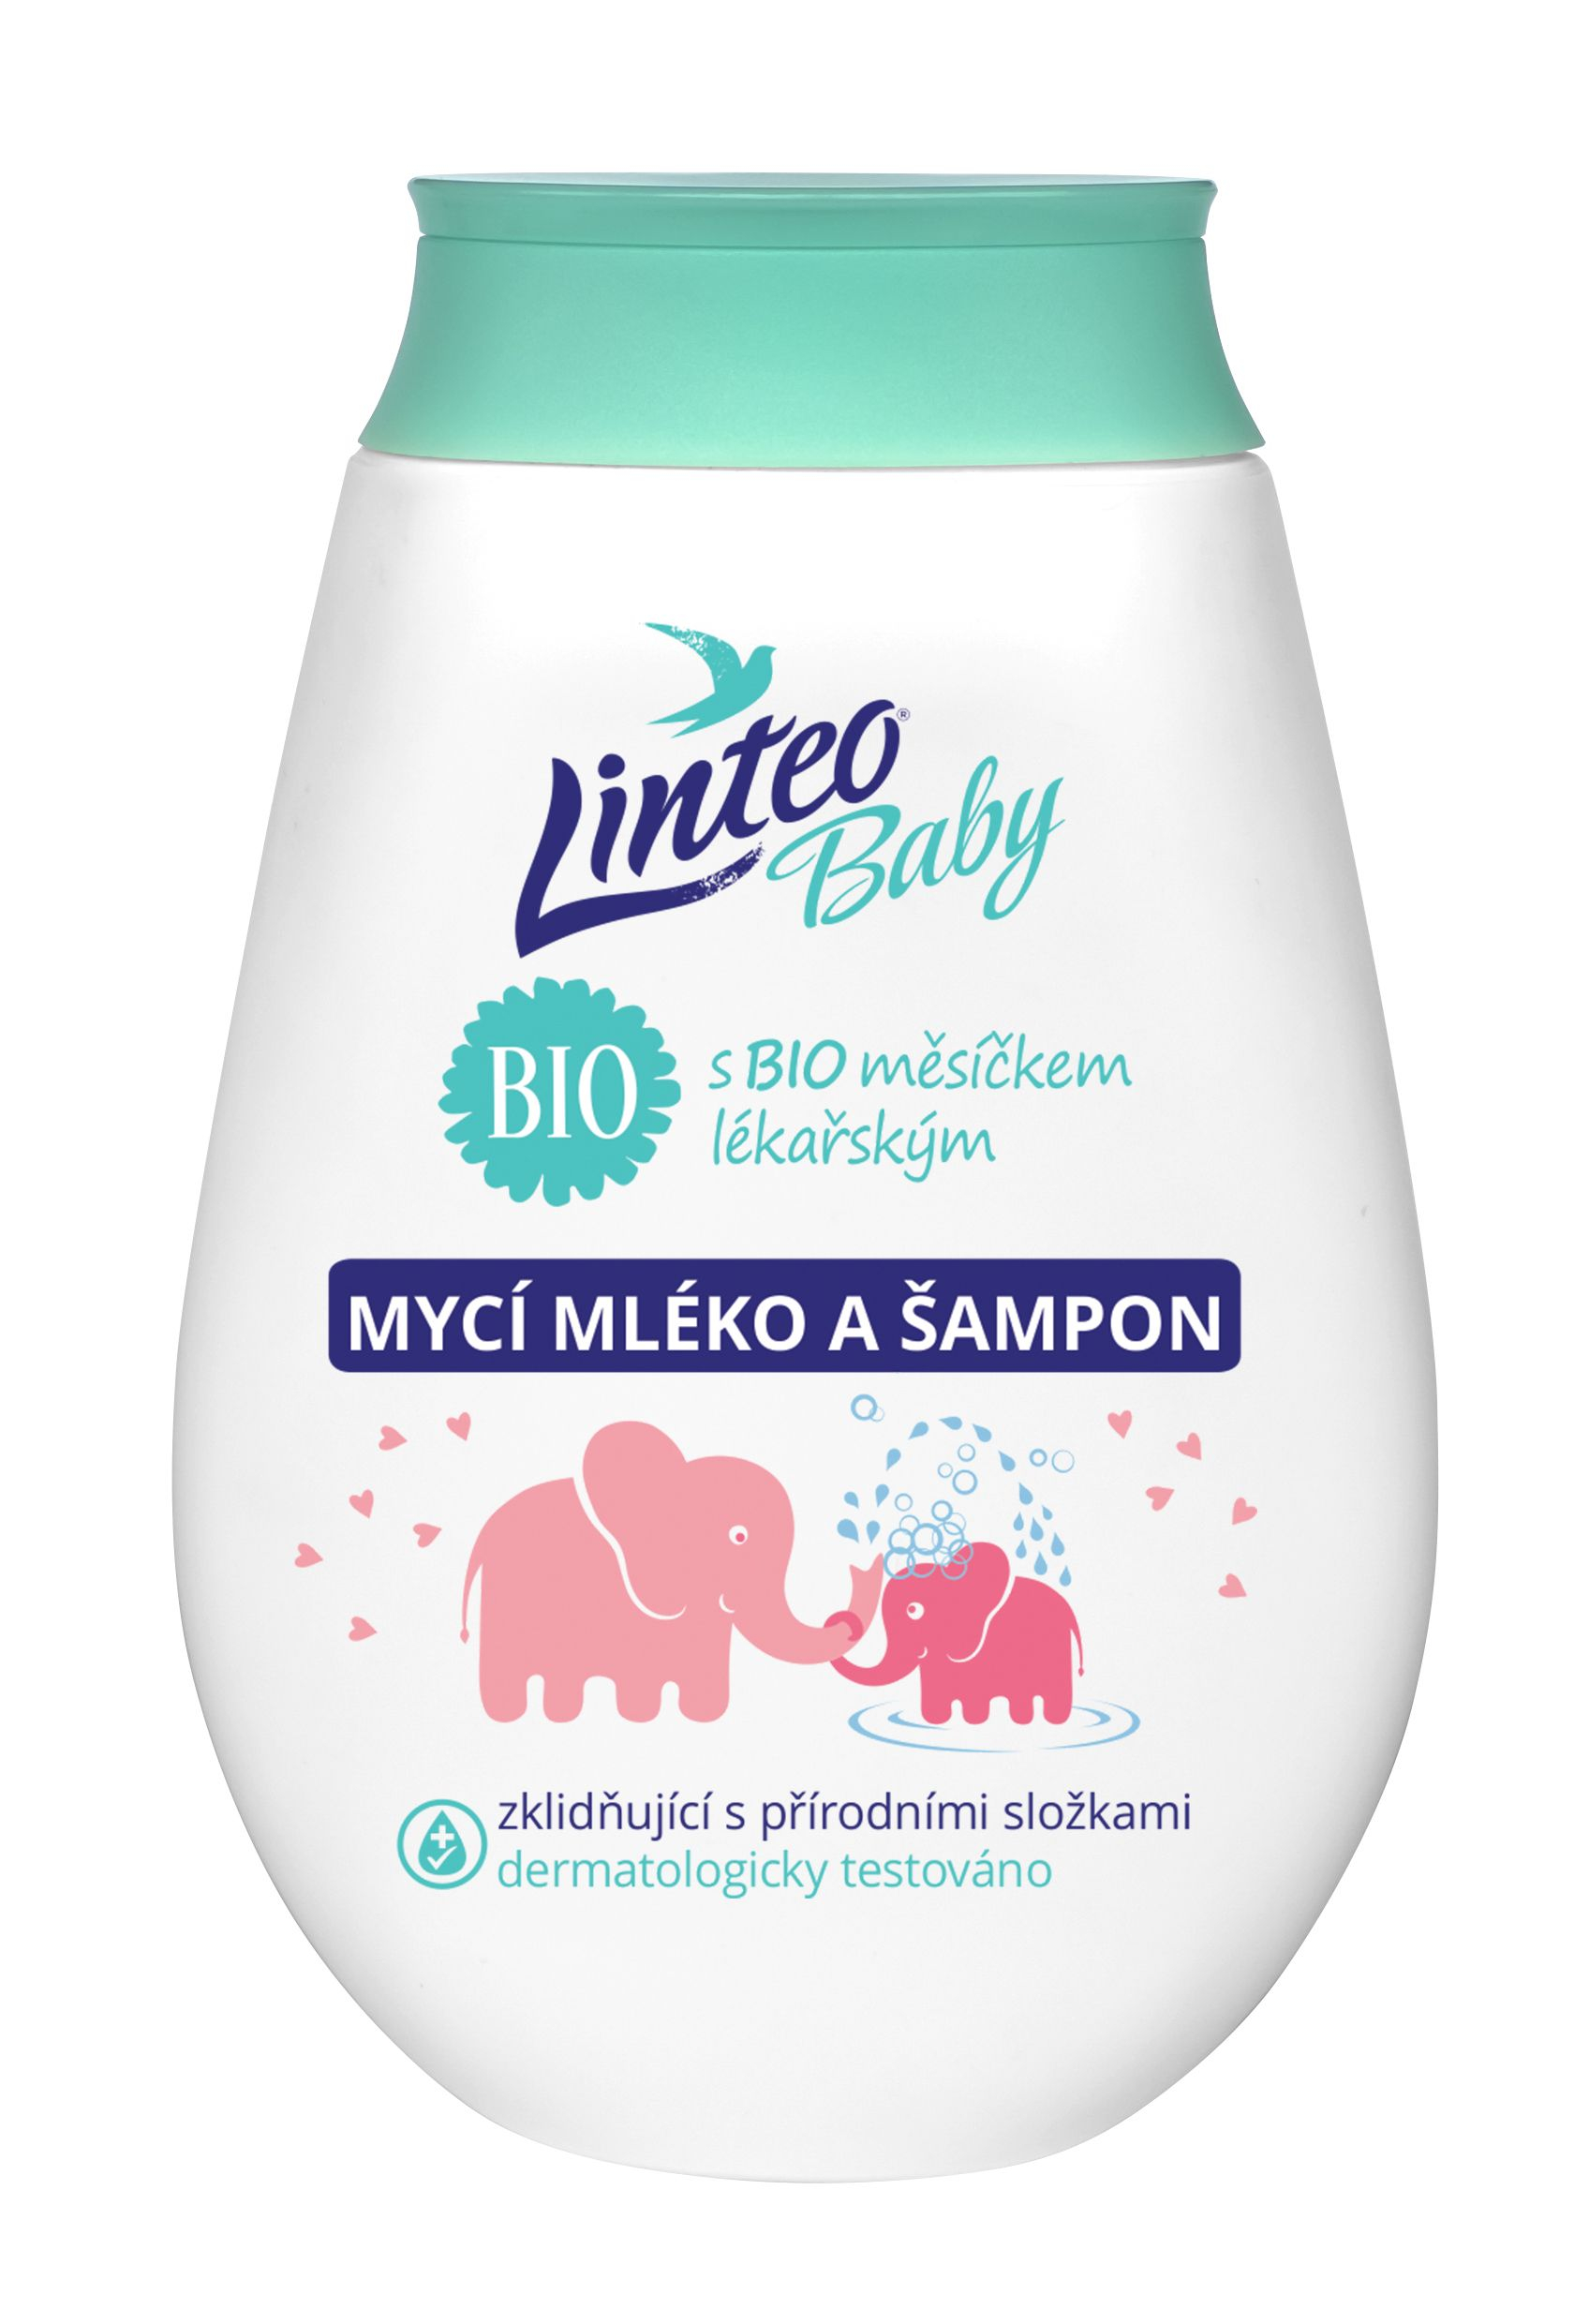 Linteo Baby Dětské mycí mléko a šampon s BIO měsíčkem lékařským 250 ml Linteo Baby